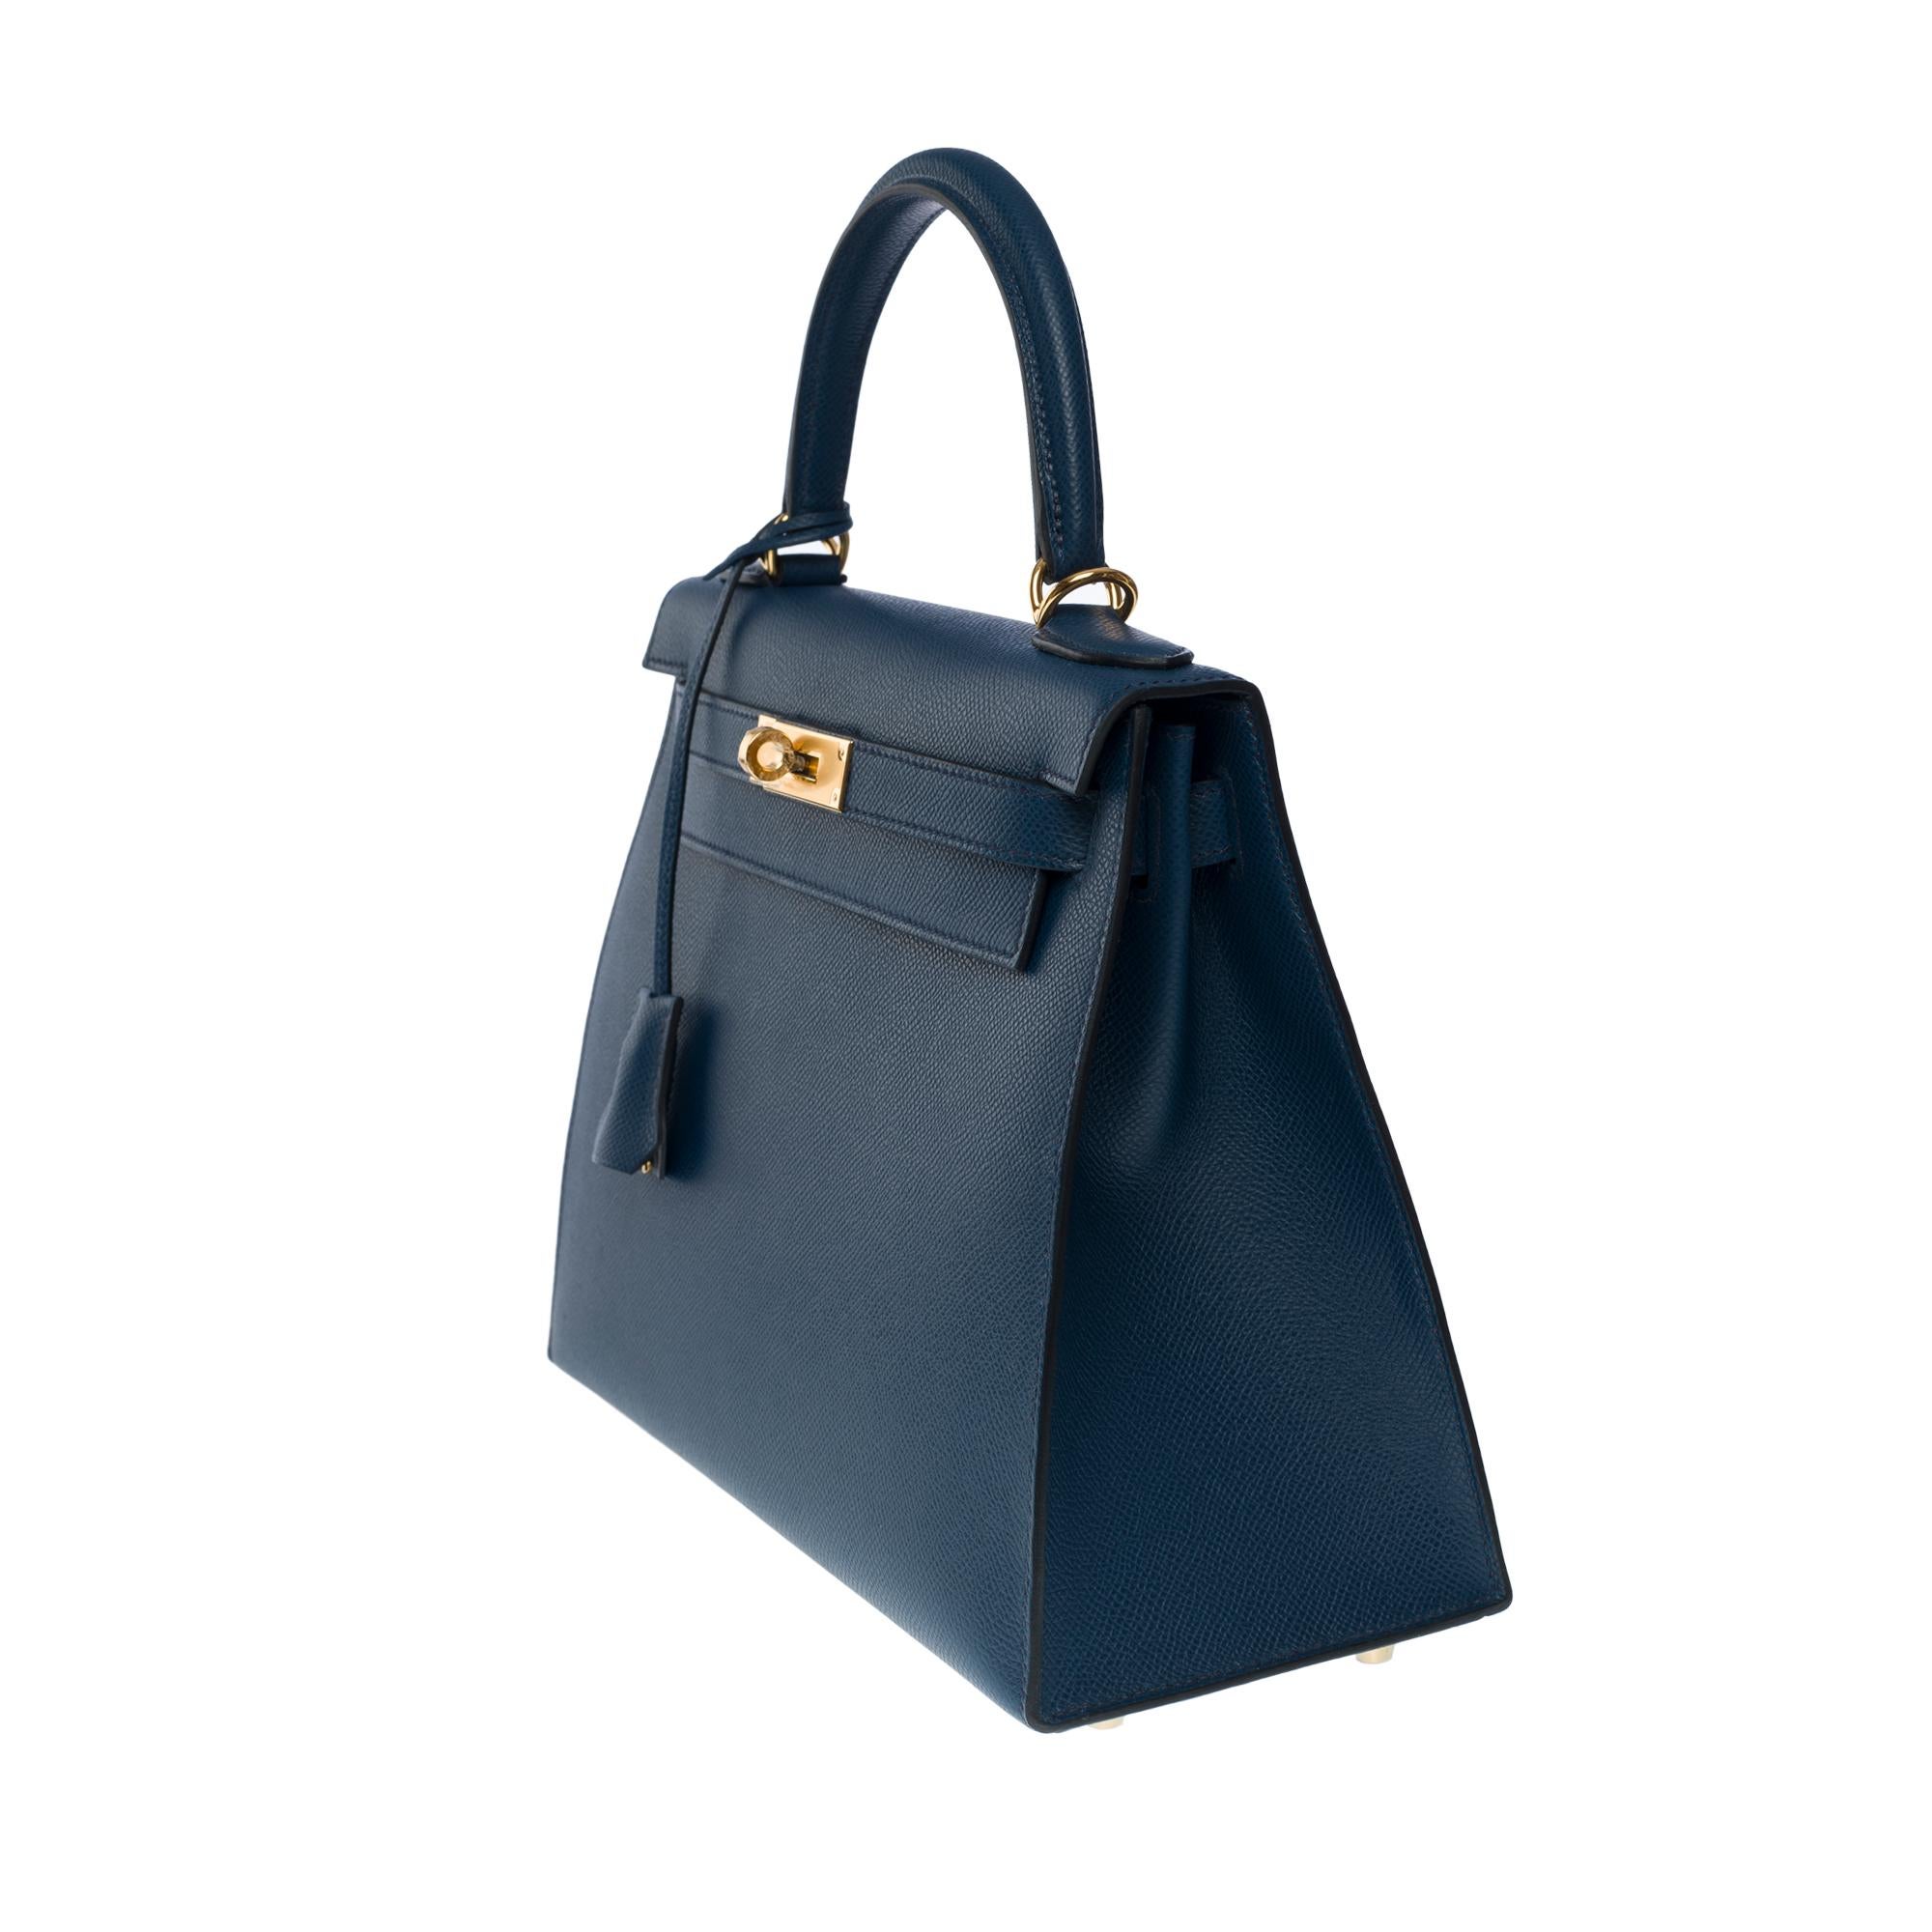 Women's New Hermès Kelly 28 sellier handbag strap in Prussian blue Epsom leather, GHW